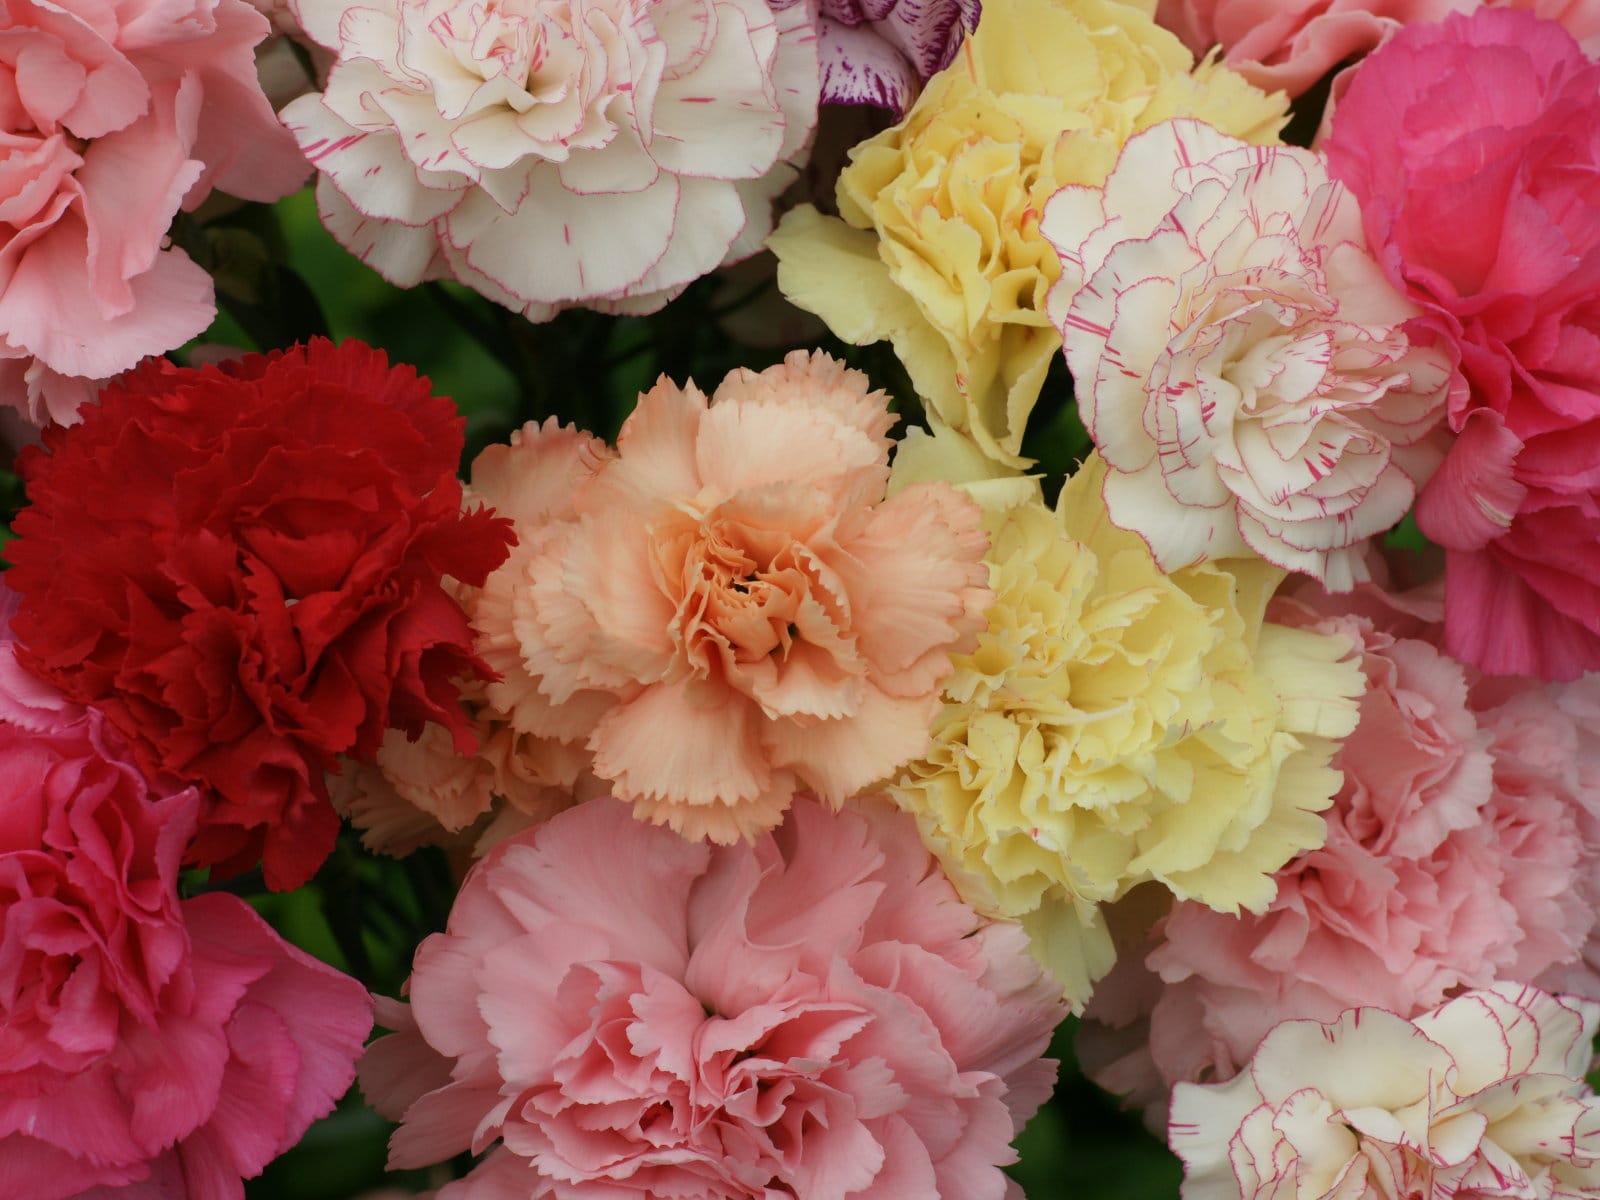 Hình ảnh hoa cẩm chướng luôn là niềm cảm hứng cho người yêu thích nhiếp ảnh và sáng tạo. Với sắc đỏ rực rỡ và hình dáng đẹp mắt, bức ảnh hoa cẩm chướng sẽ làm cho bất kỳ ai nhìn vào đều phải cảm thấy thích thú.